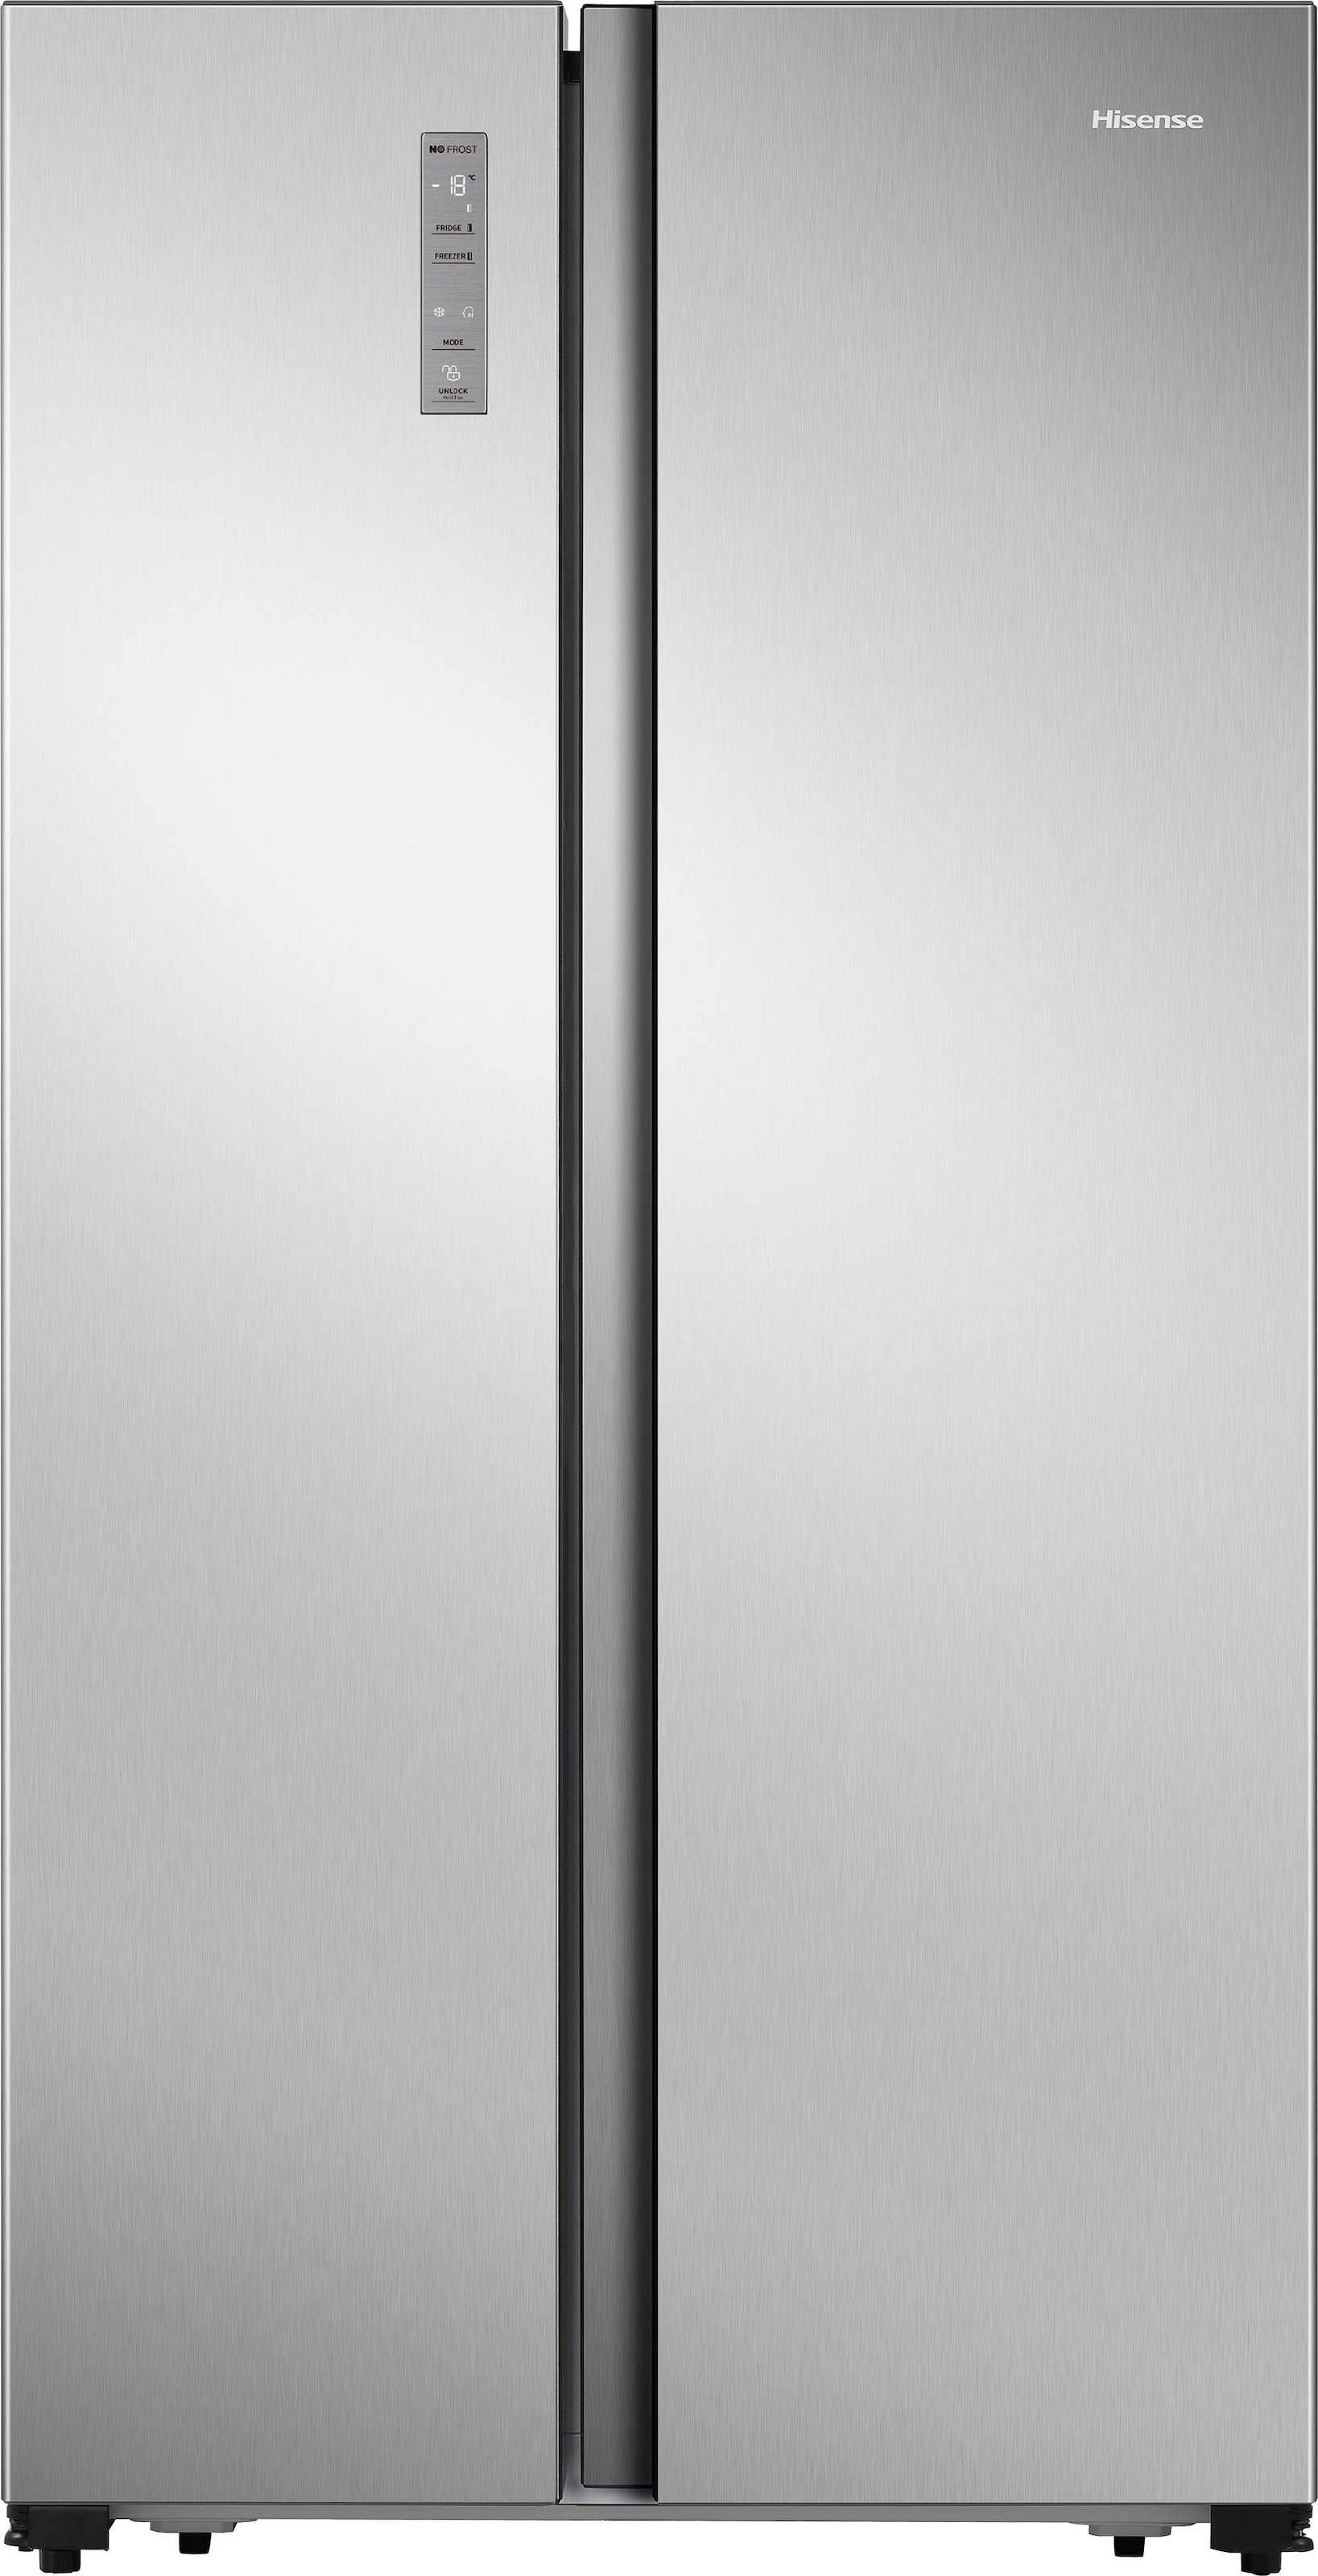 Hisense Side-by-Side »MS91518«, MS91518FC, 178,6 cm hoch, 91 cm breit, 4  Jahre Herstellergarantie jetzt kaufen bei OTTO